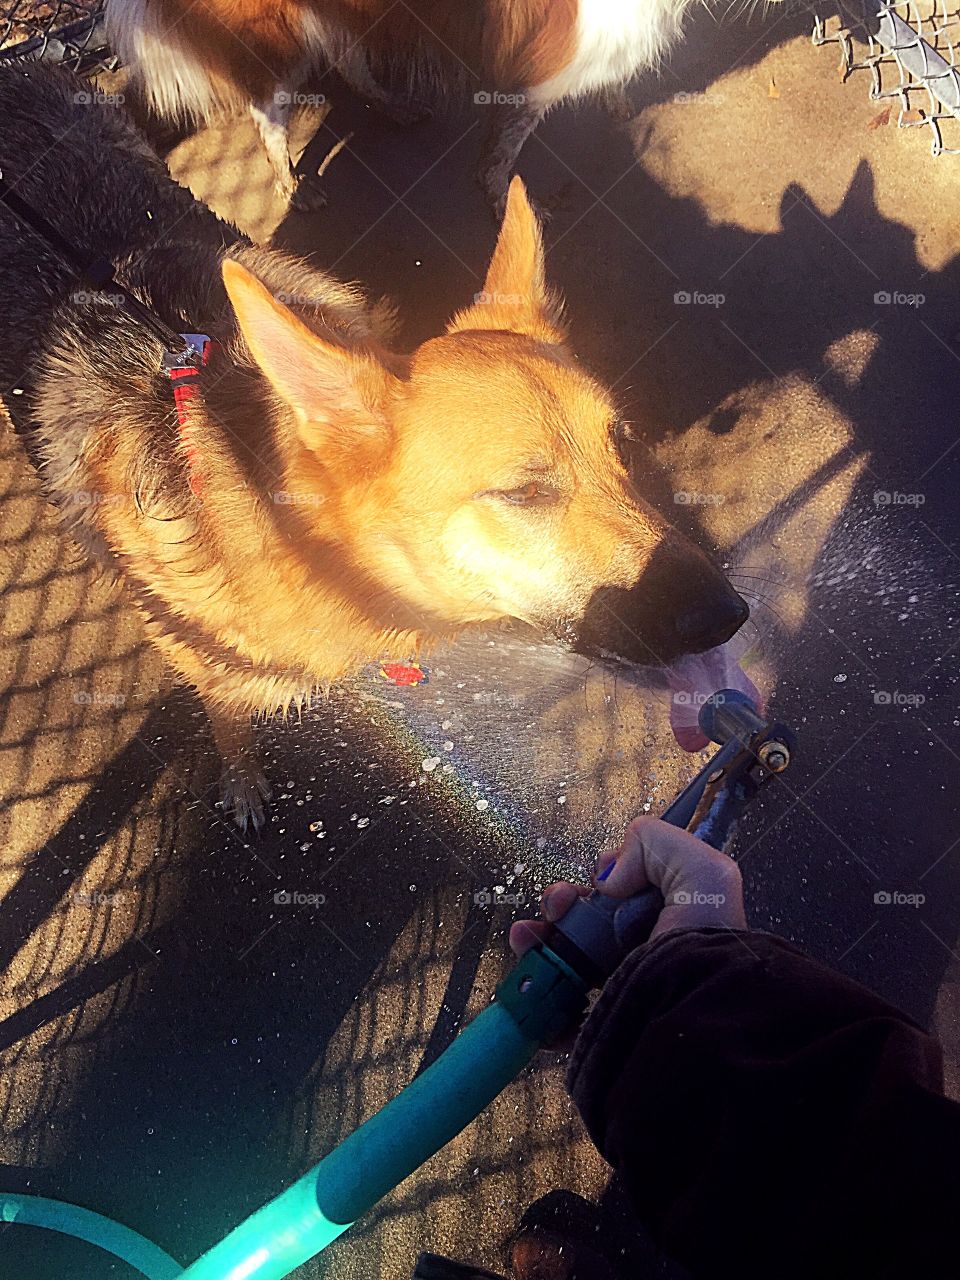 She loves the hose!